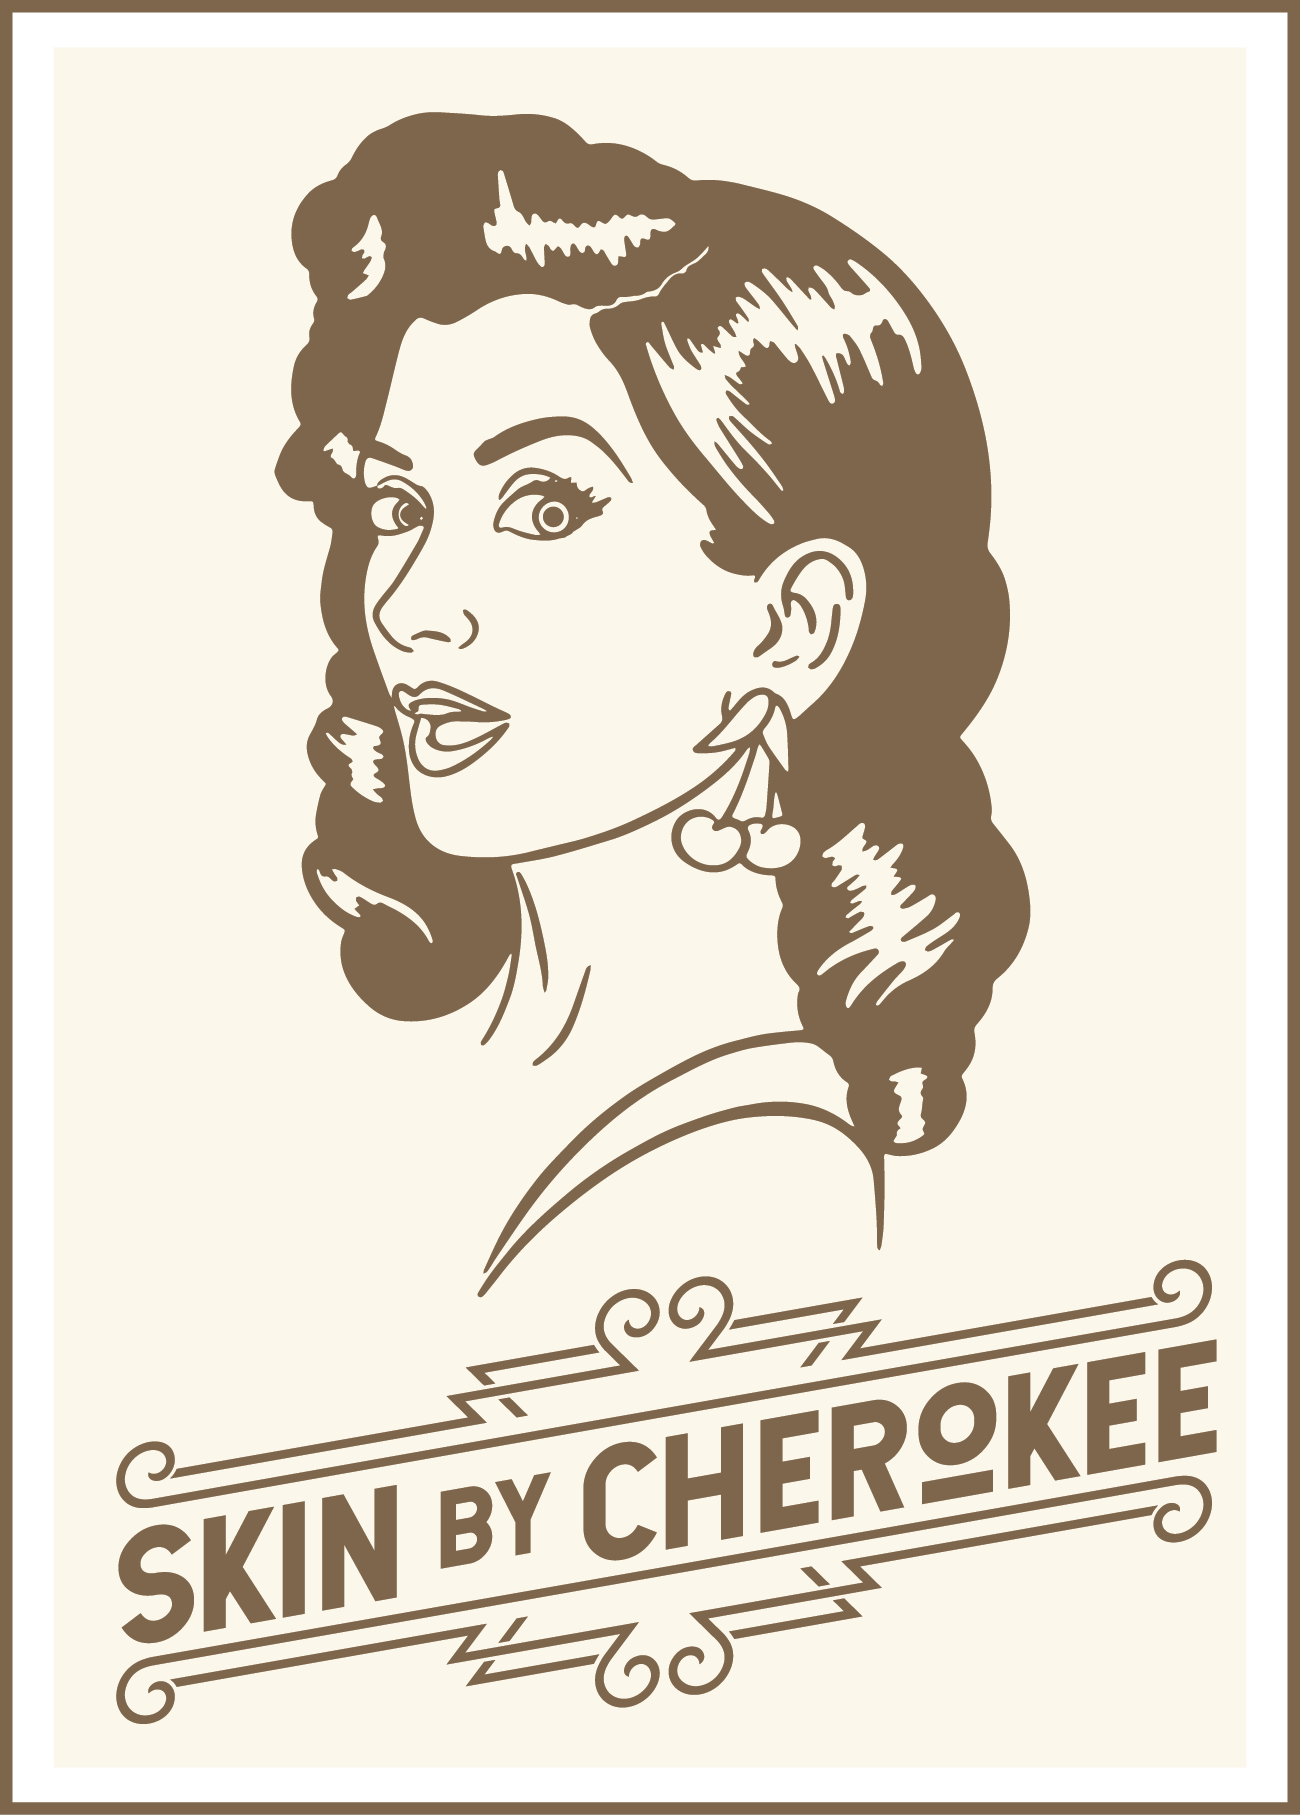 Skin by Cherokee